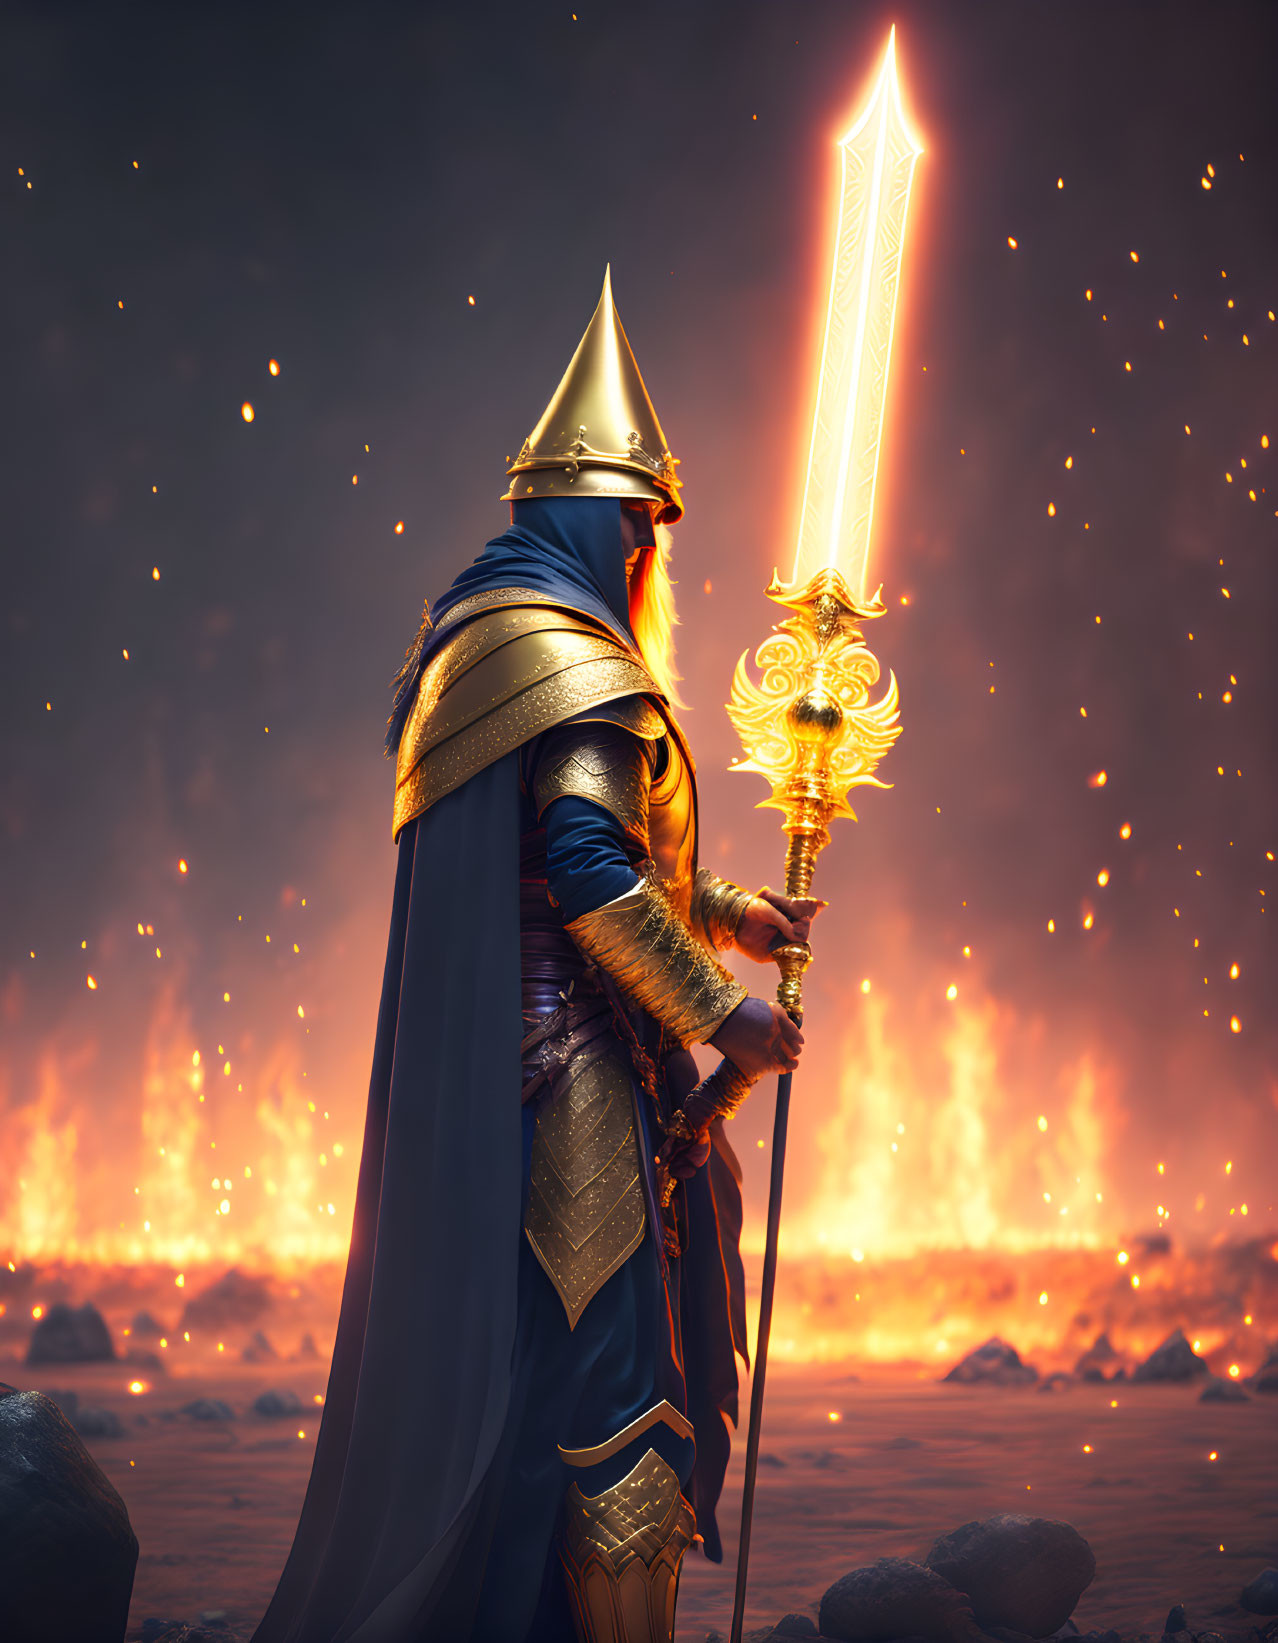 Ornate armor knight with glowing sword on fiery battlefield